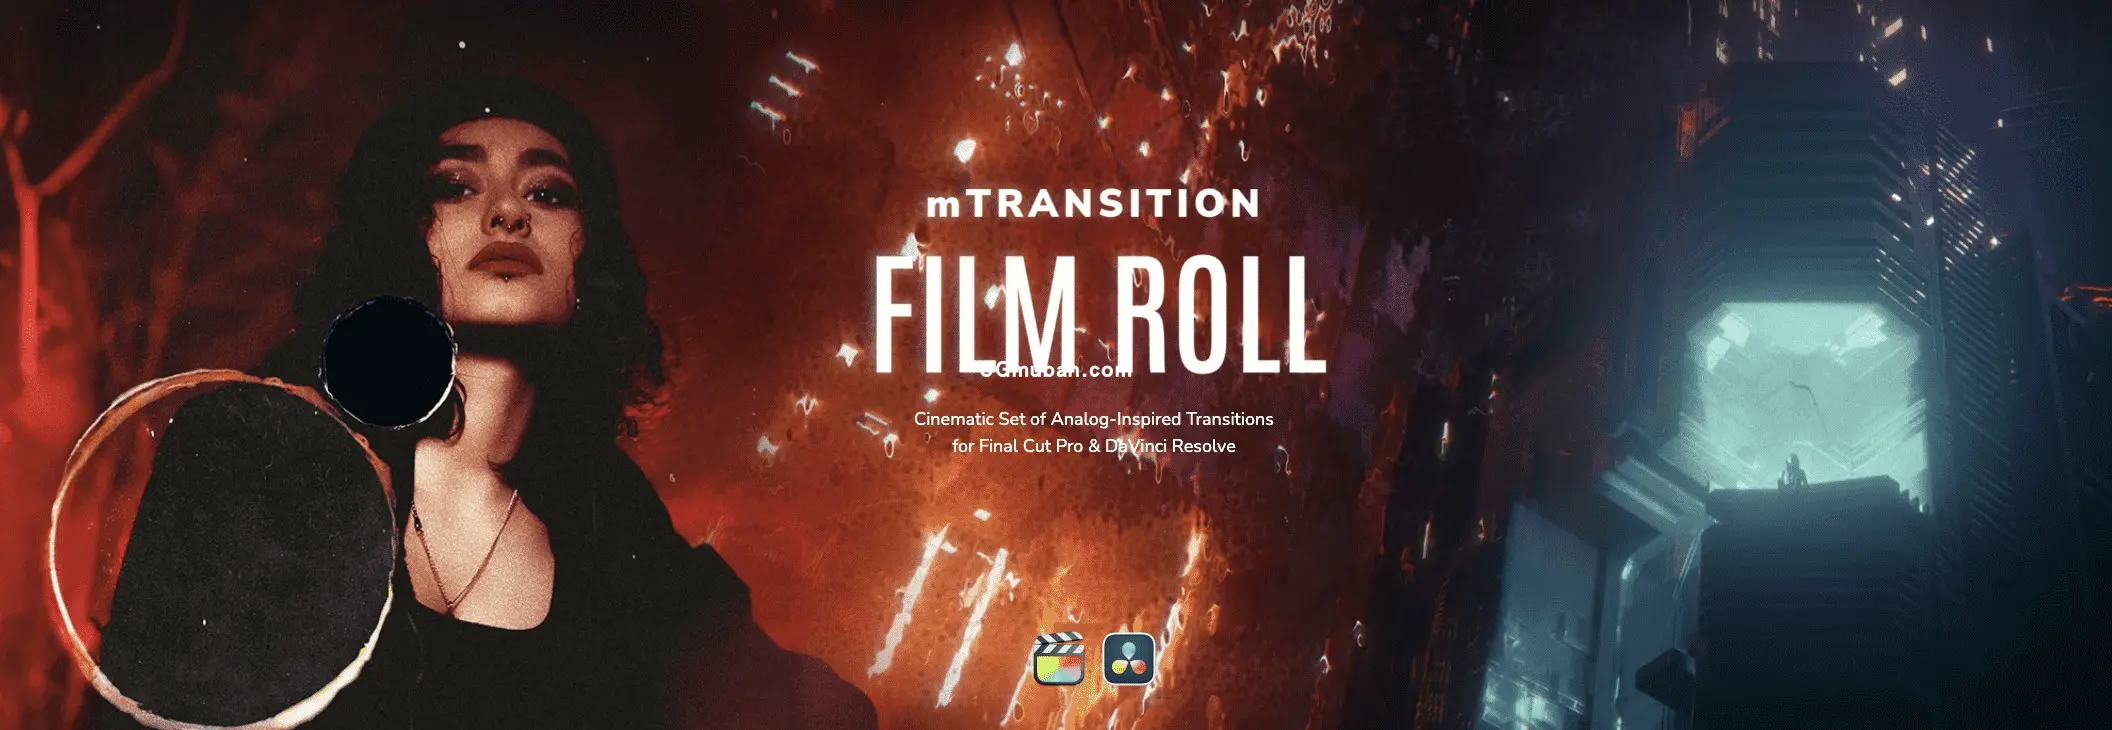 mTransition Film Roll